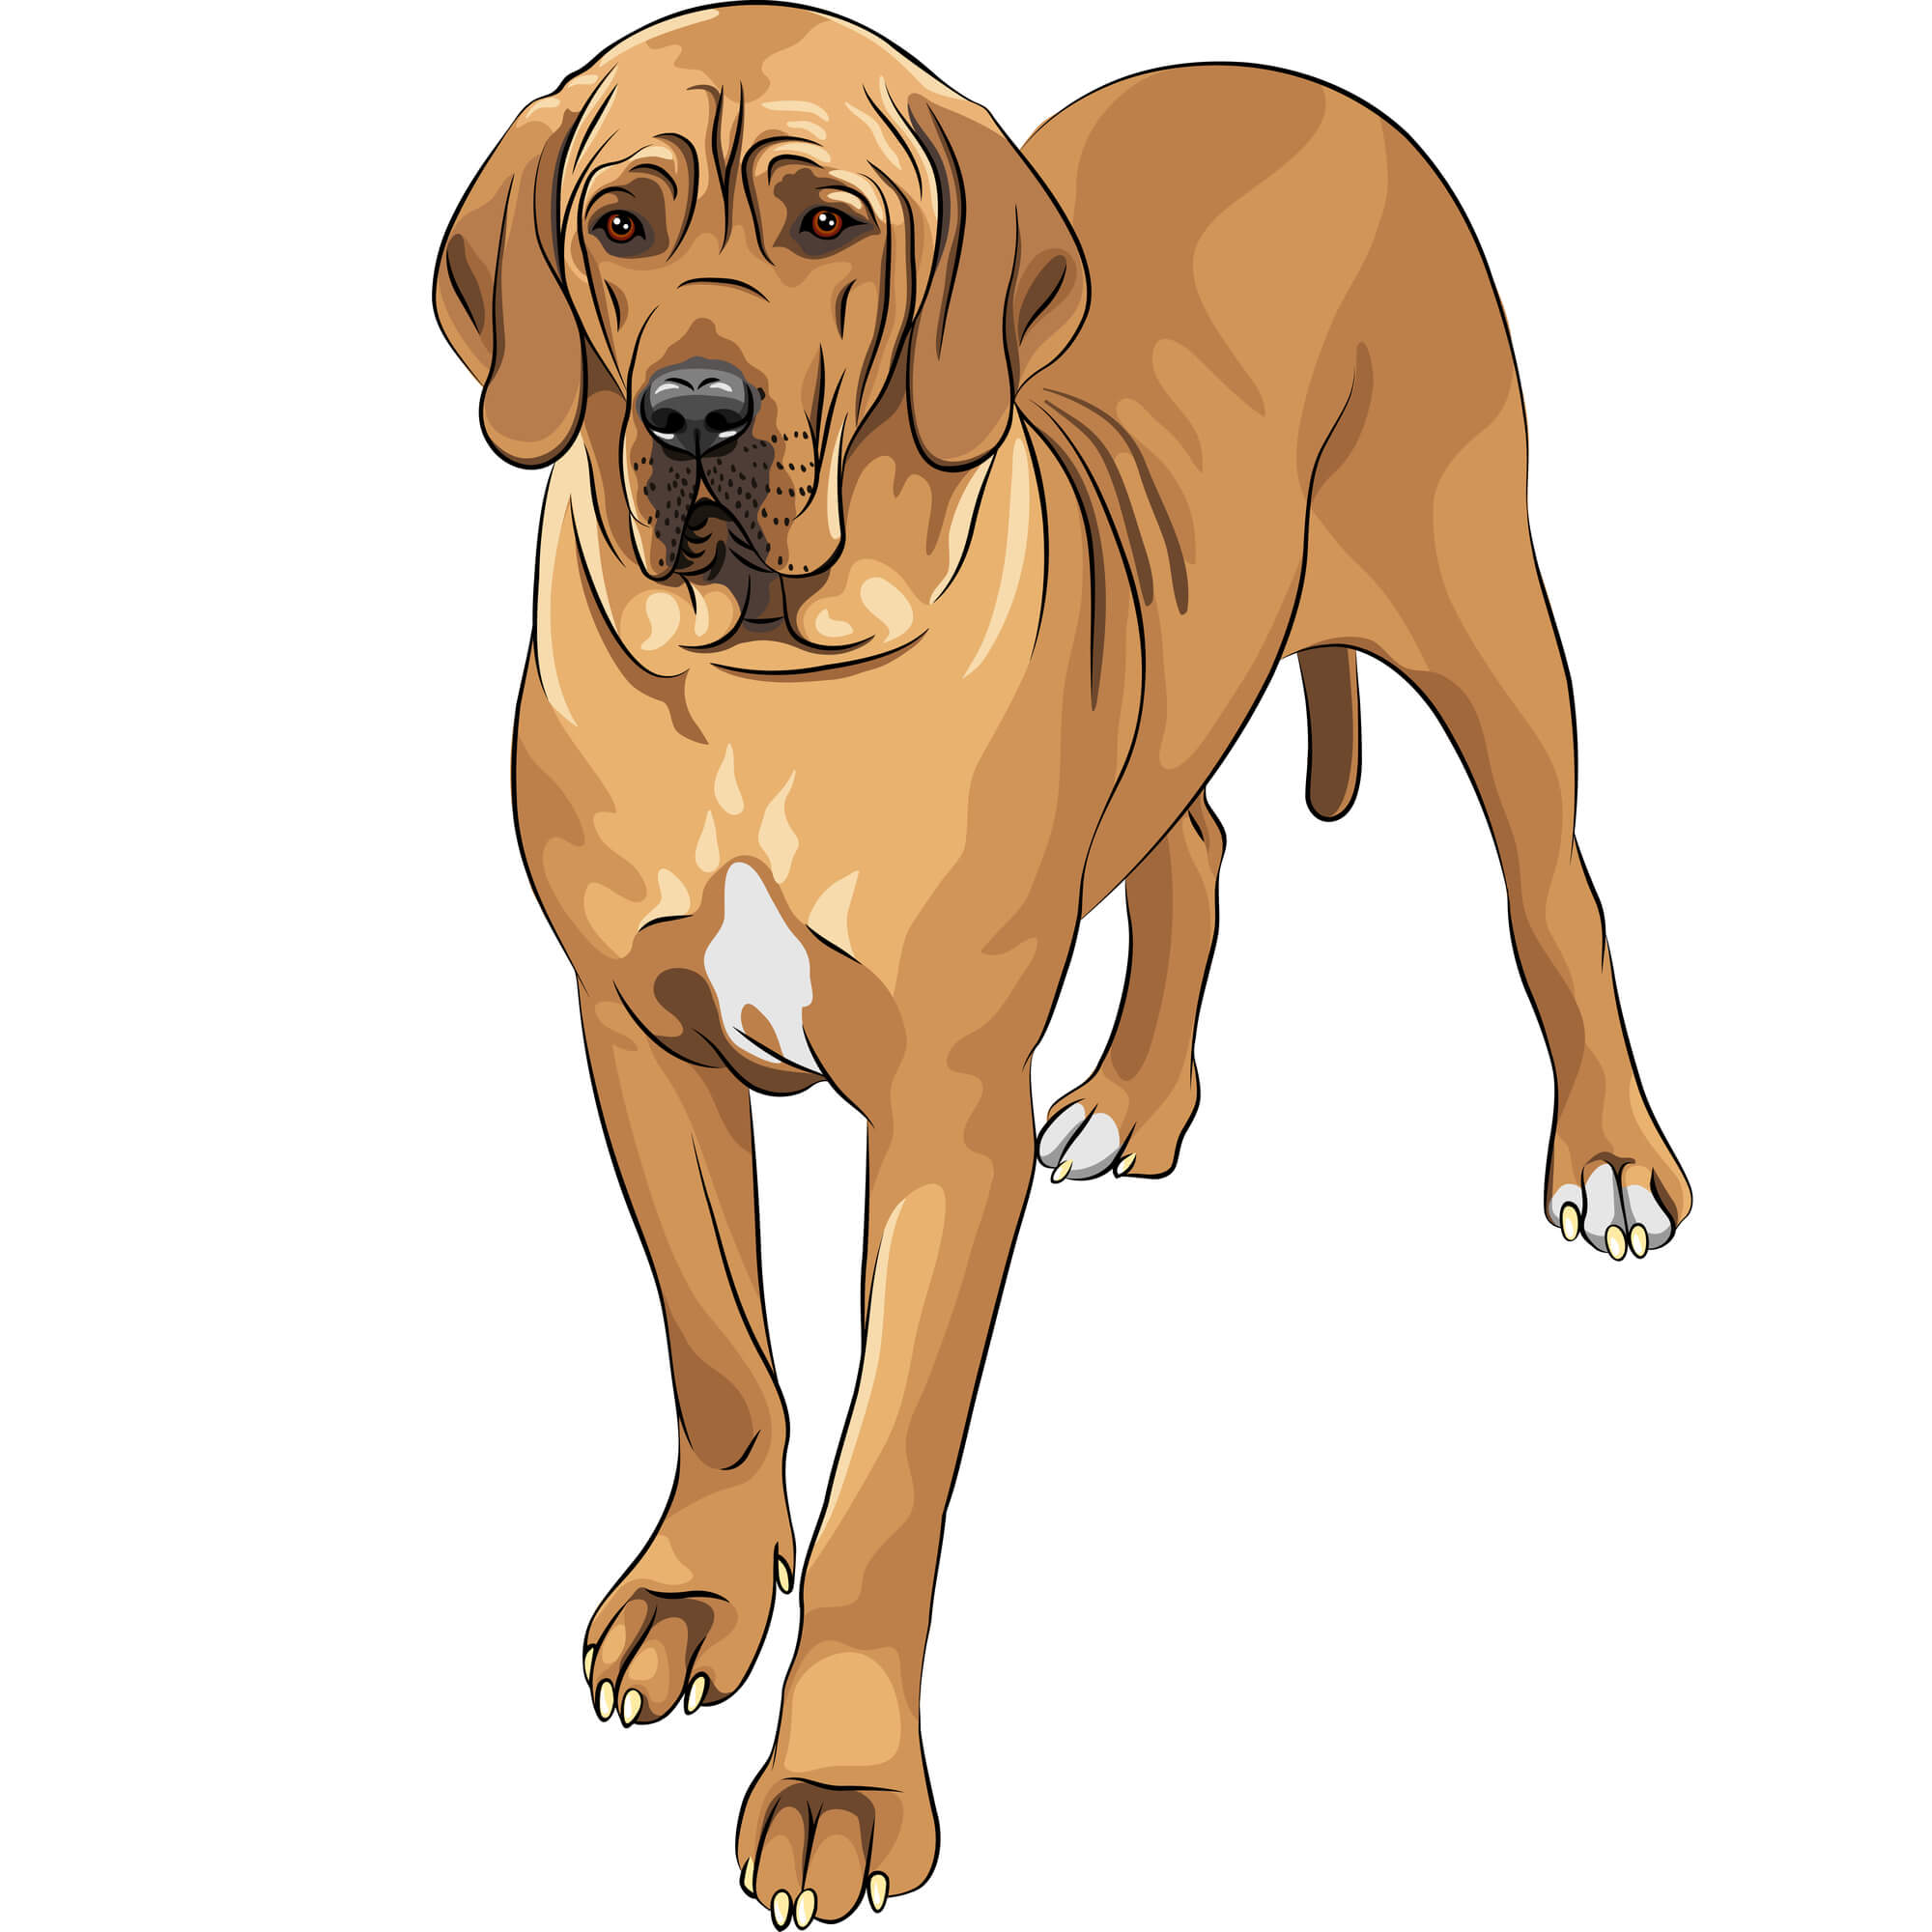 כלב דני ענק. <a href="https://depositphotos.com. ">איור: depositphotos.com</a>